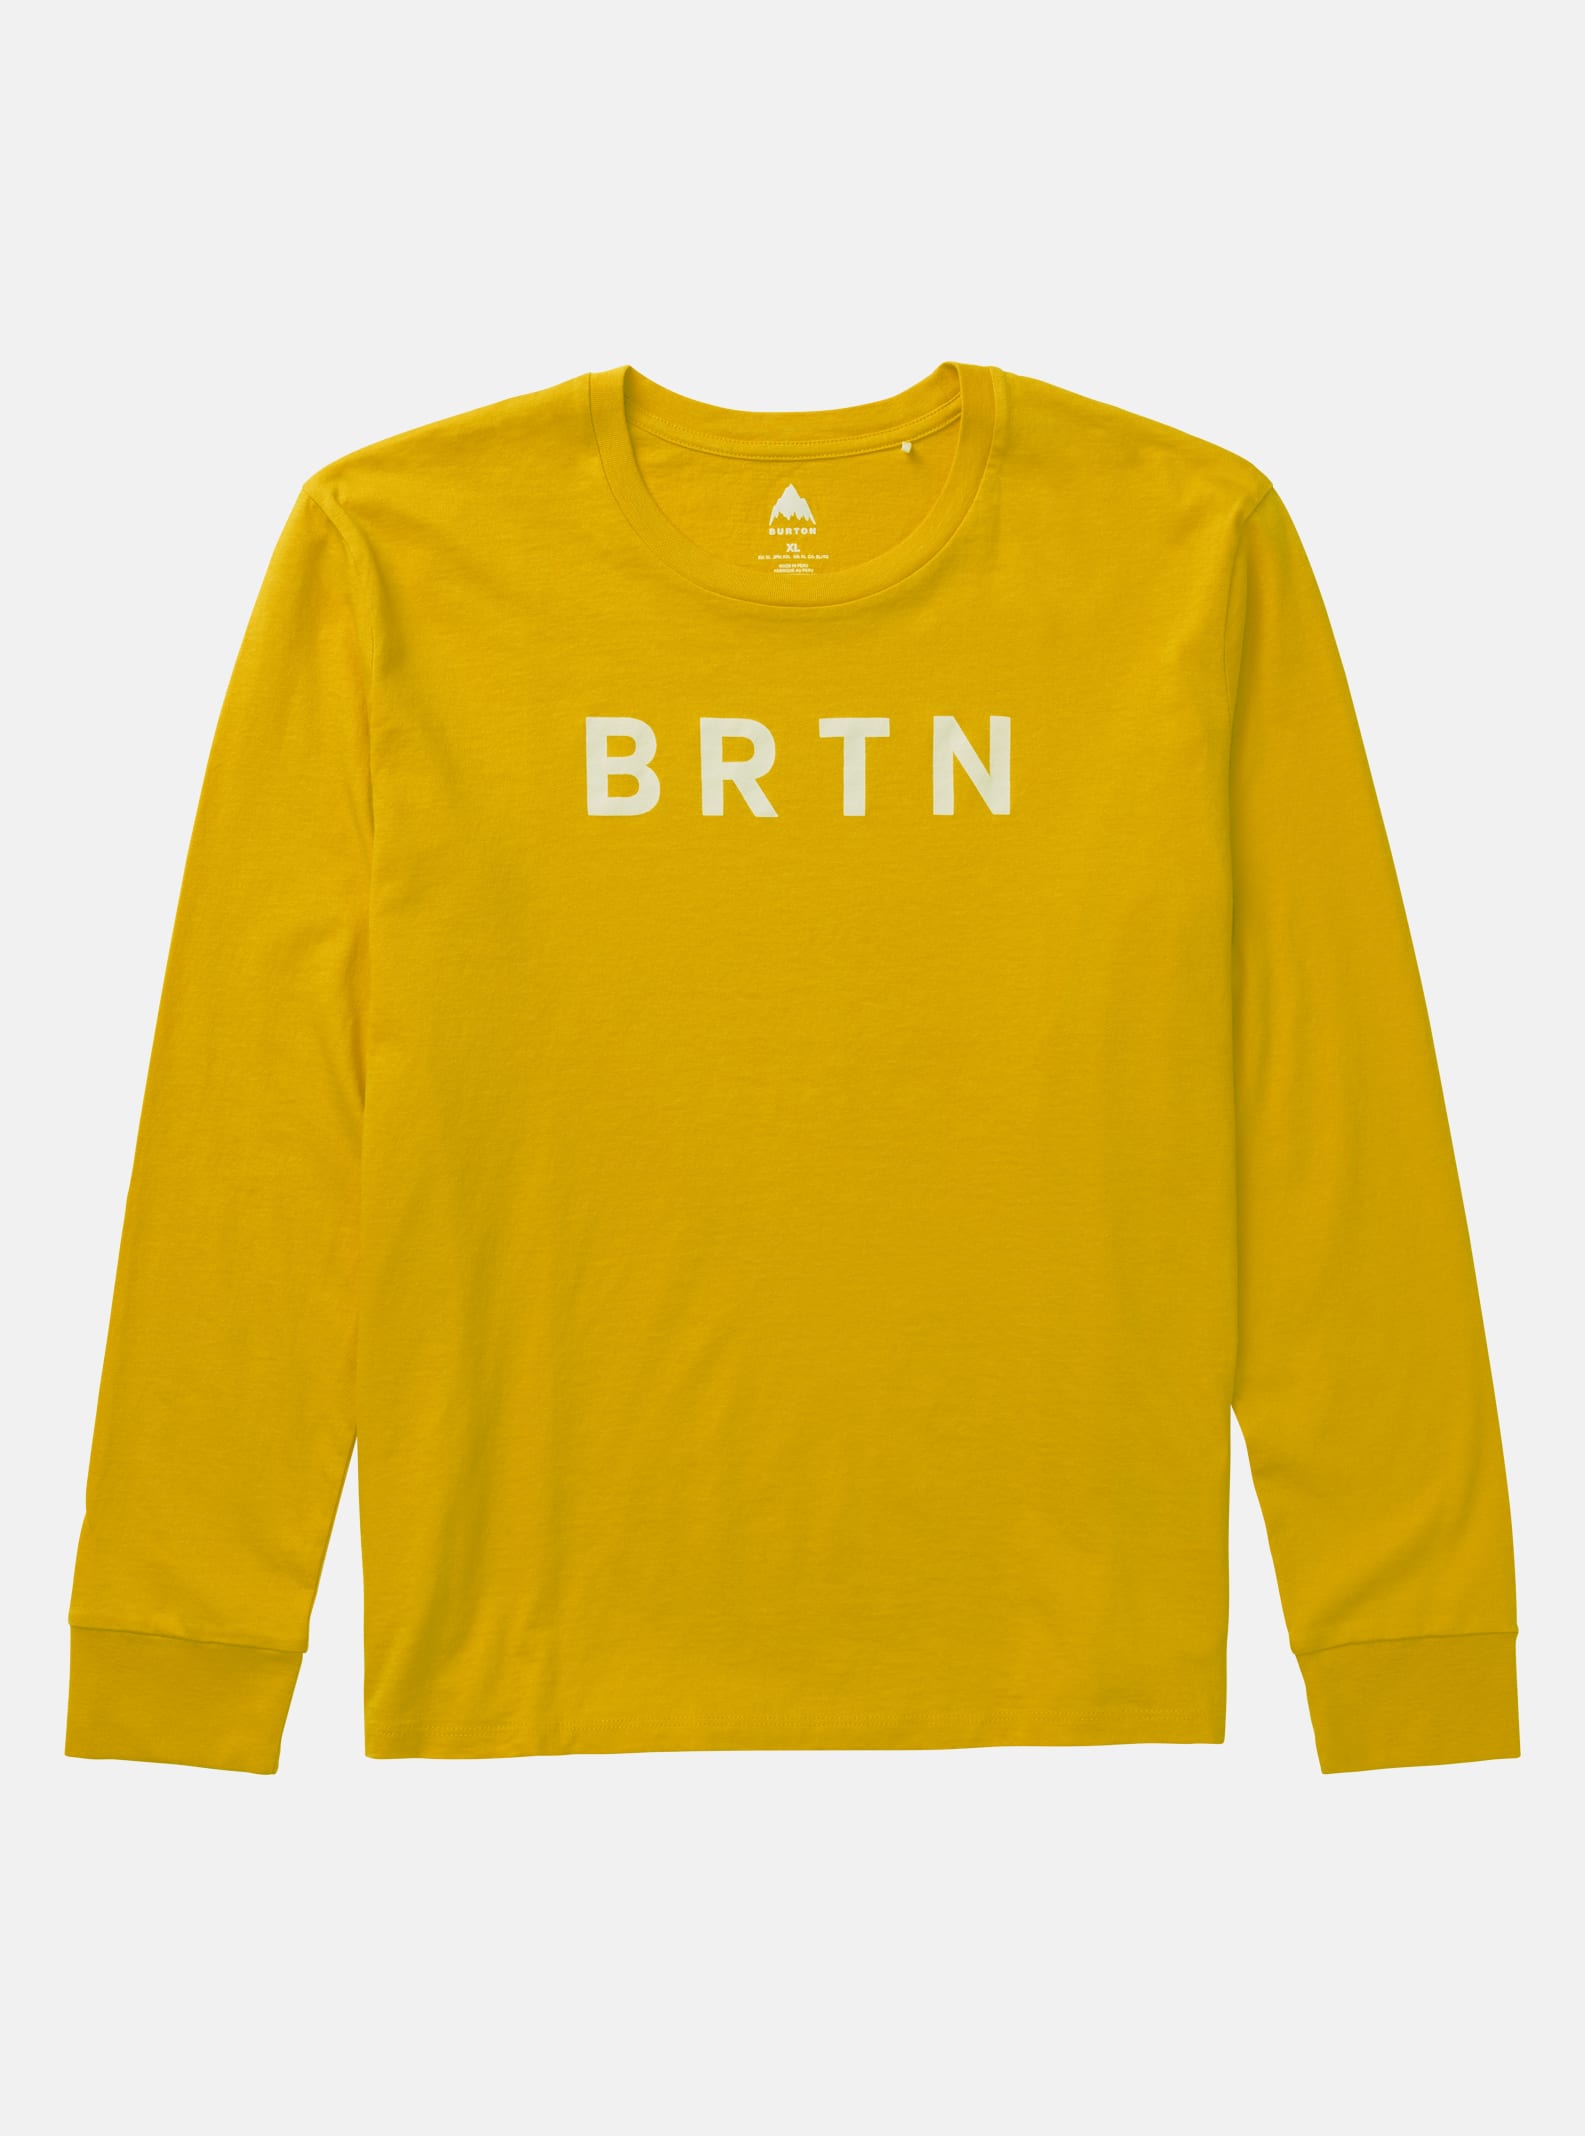 Burton BRTN långärmad t-shirt för damer, Goldenrod, L